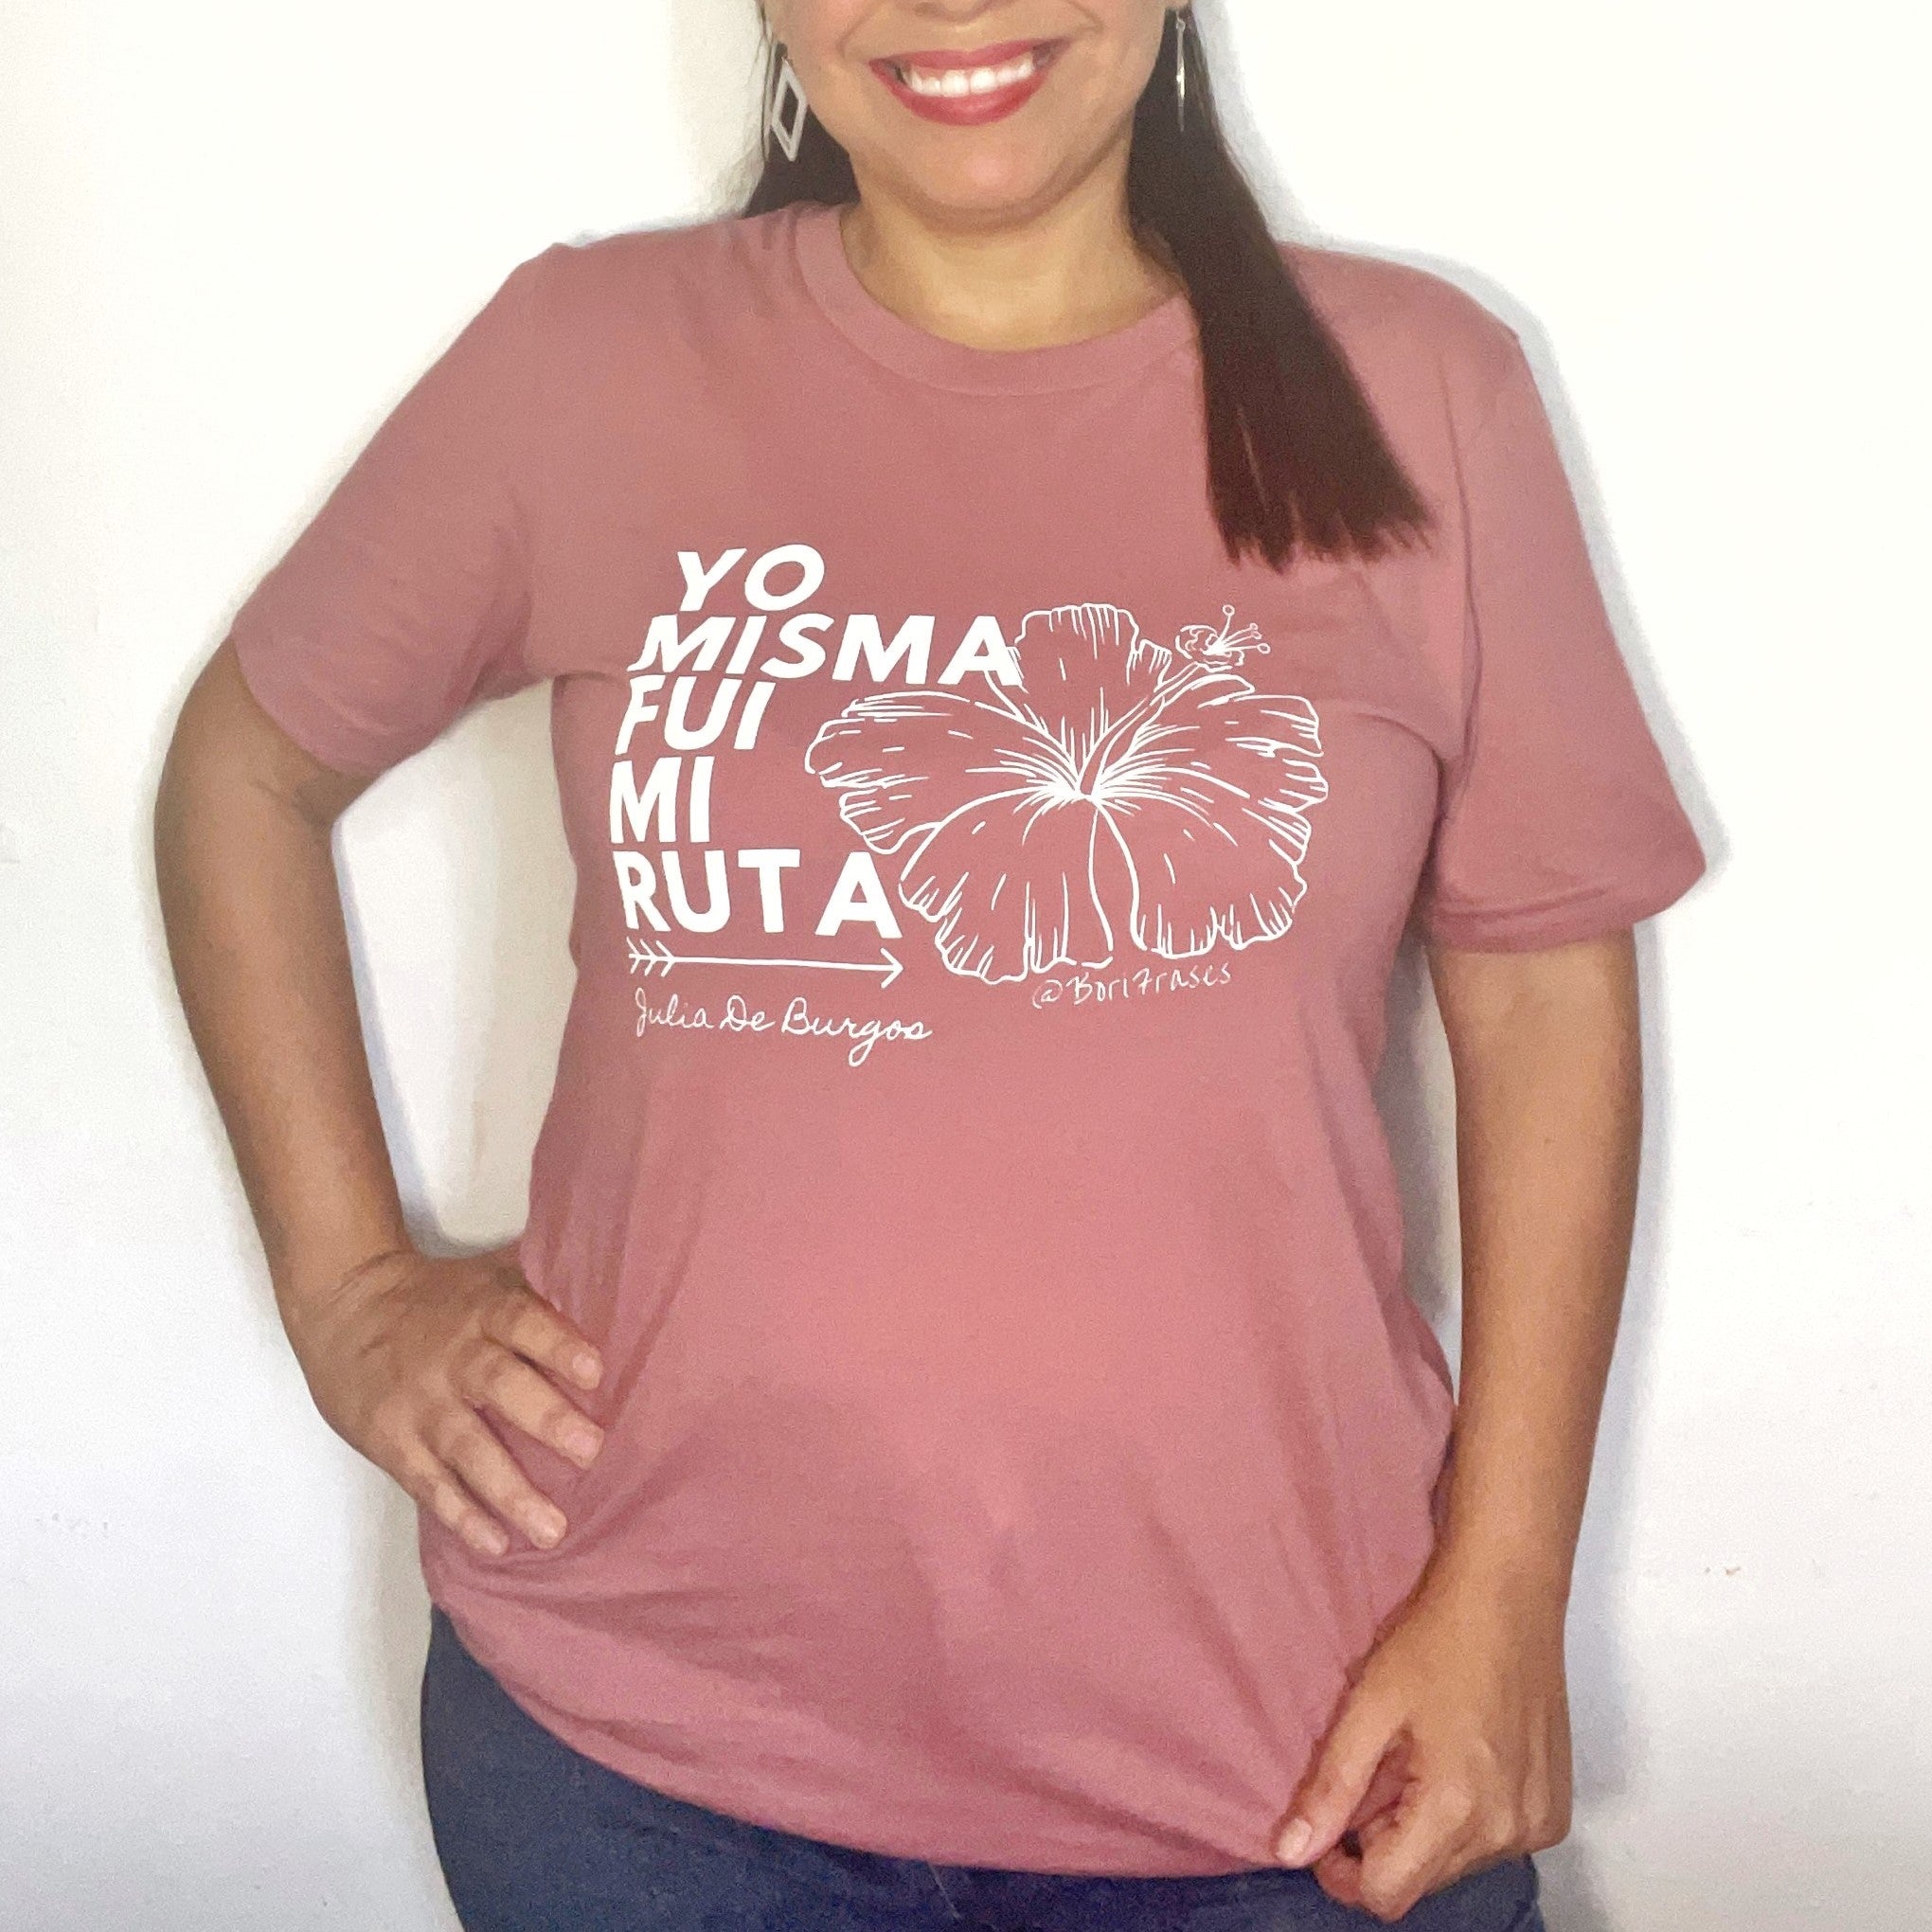 Camisa t-shirt con verso del poema Yo misma fui mi ruta de la poeta puertorriqueña, Julia De Burgos: "Se me torció el deseo de seguir a los hombres." Marca: Bella+Canvas Diseñada e impresa 100% en Puerto Rico.